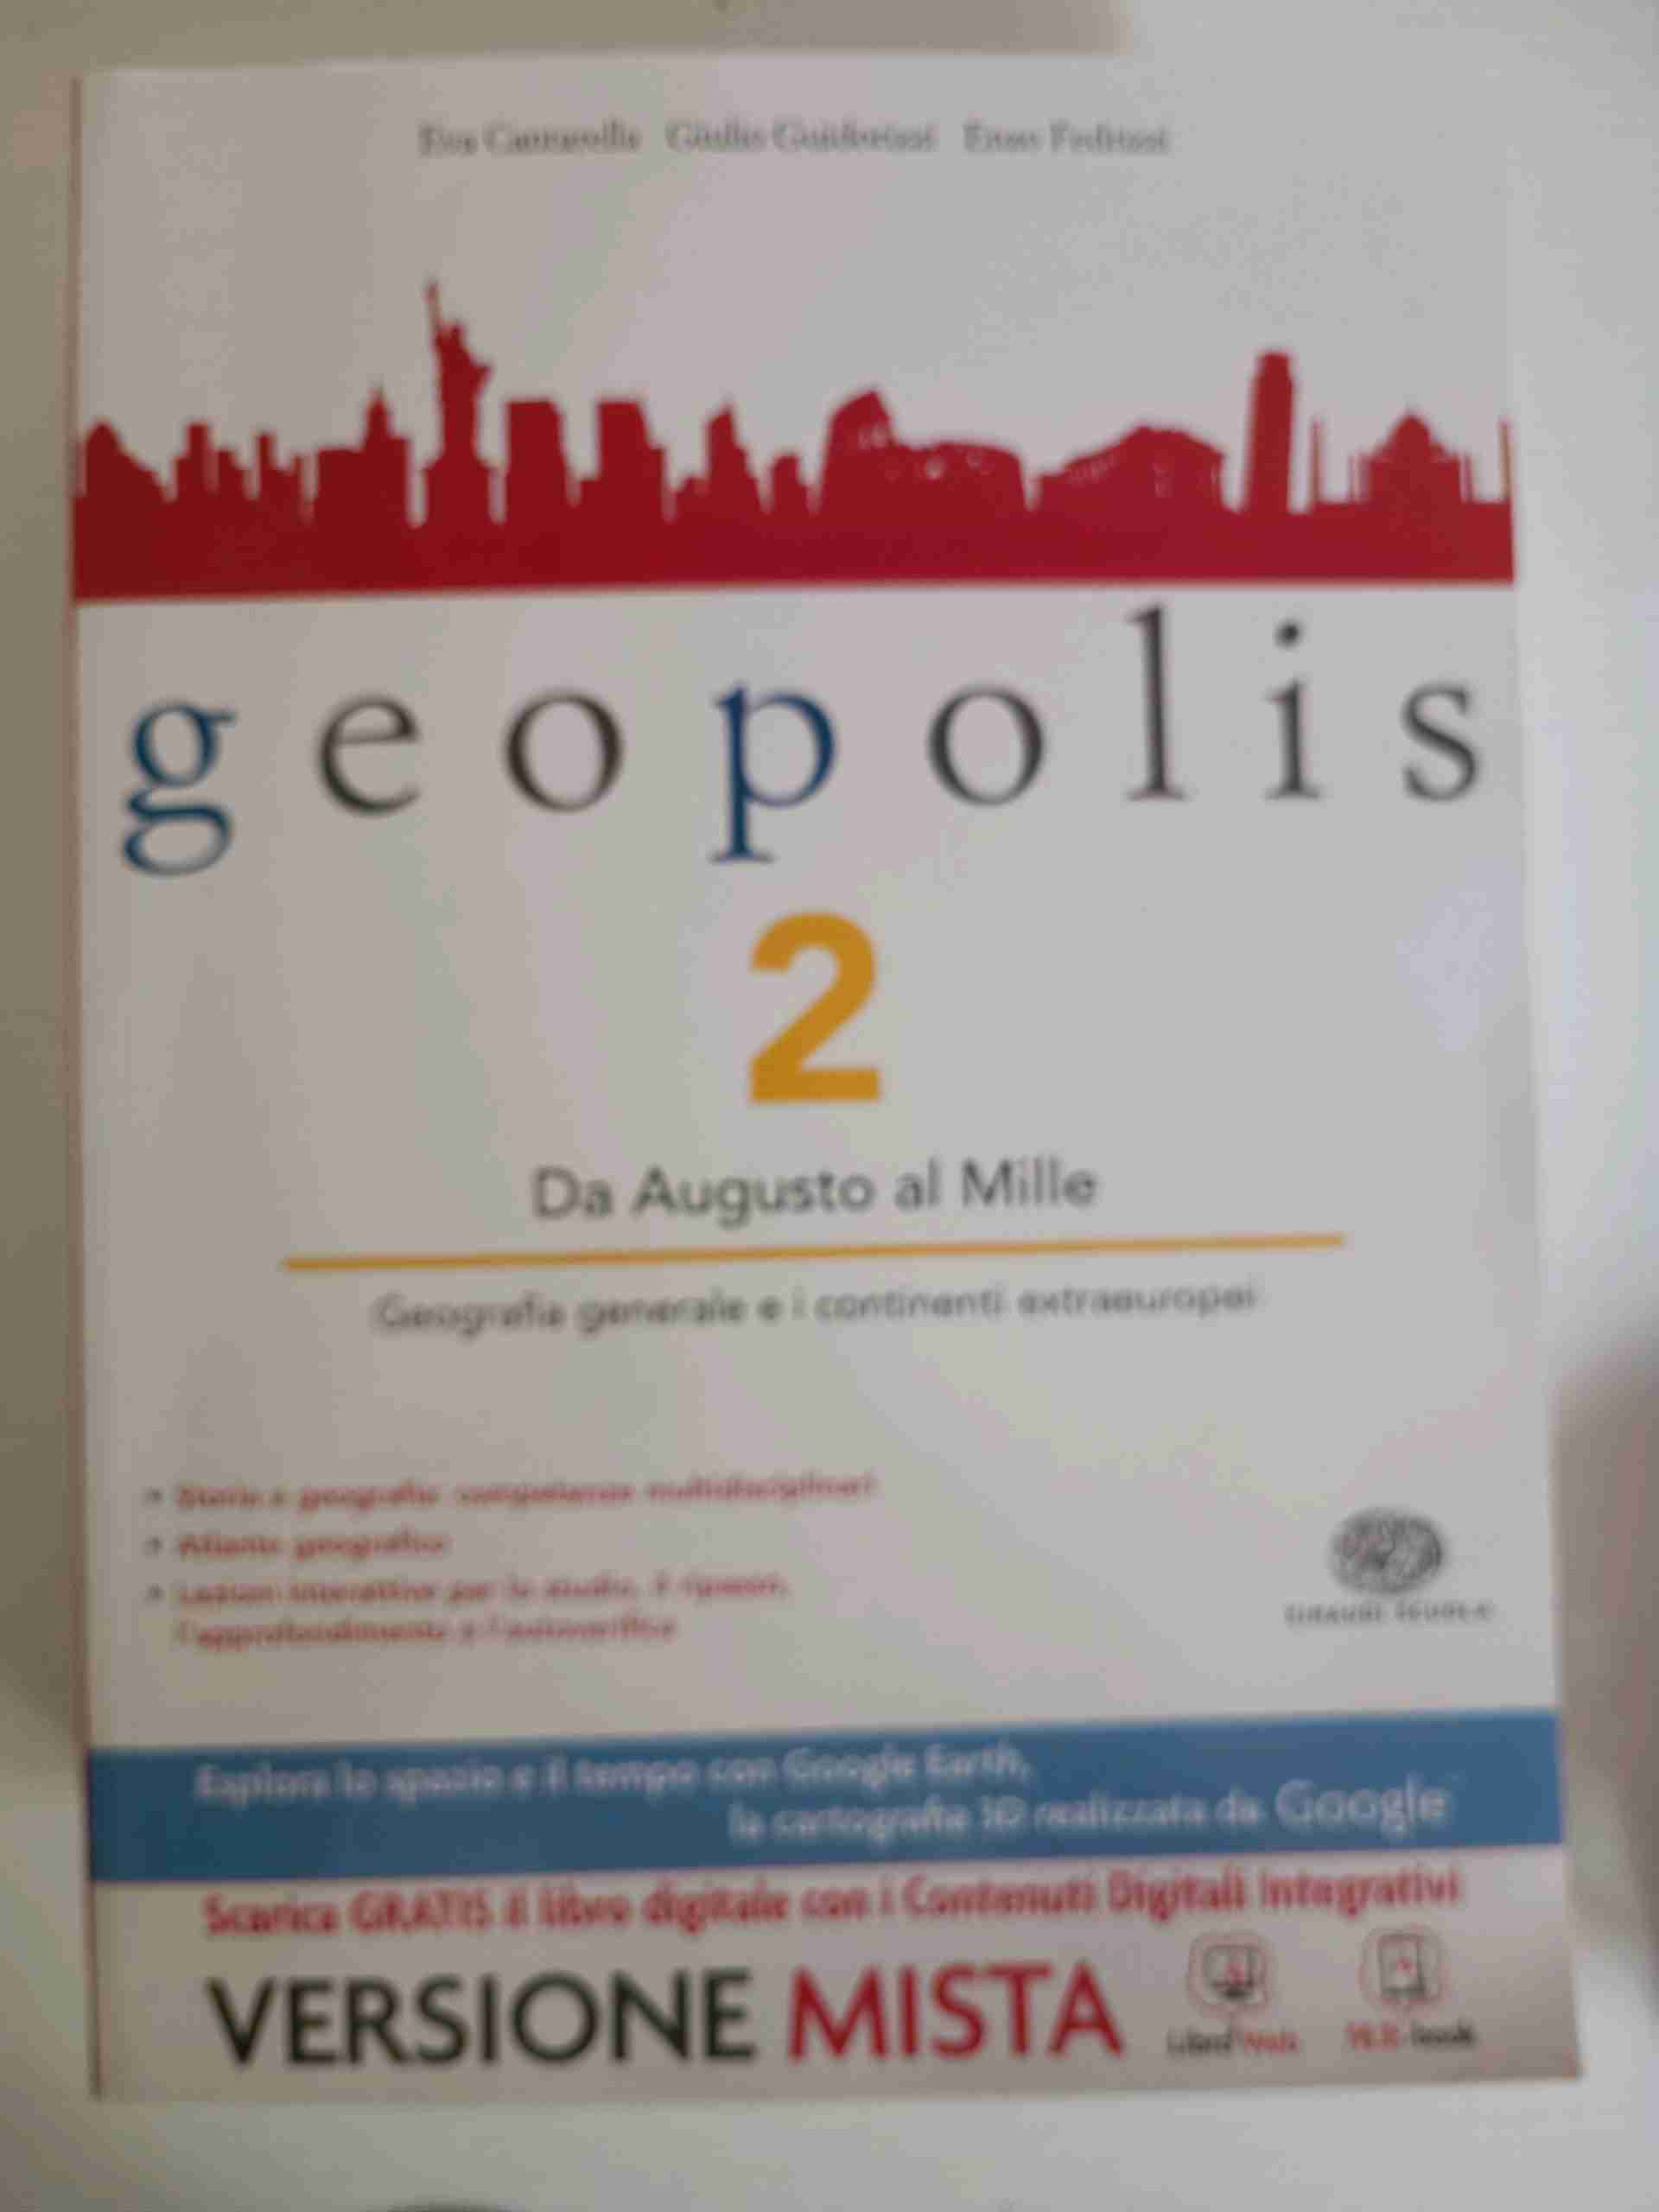 Geopolis 2 - da Augusto al mille